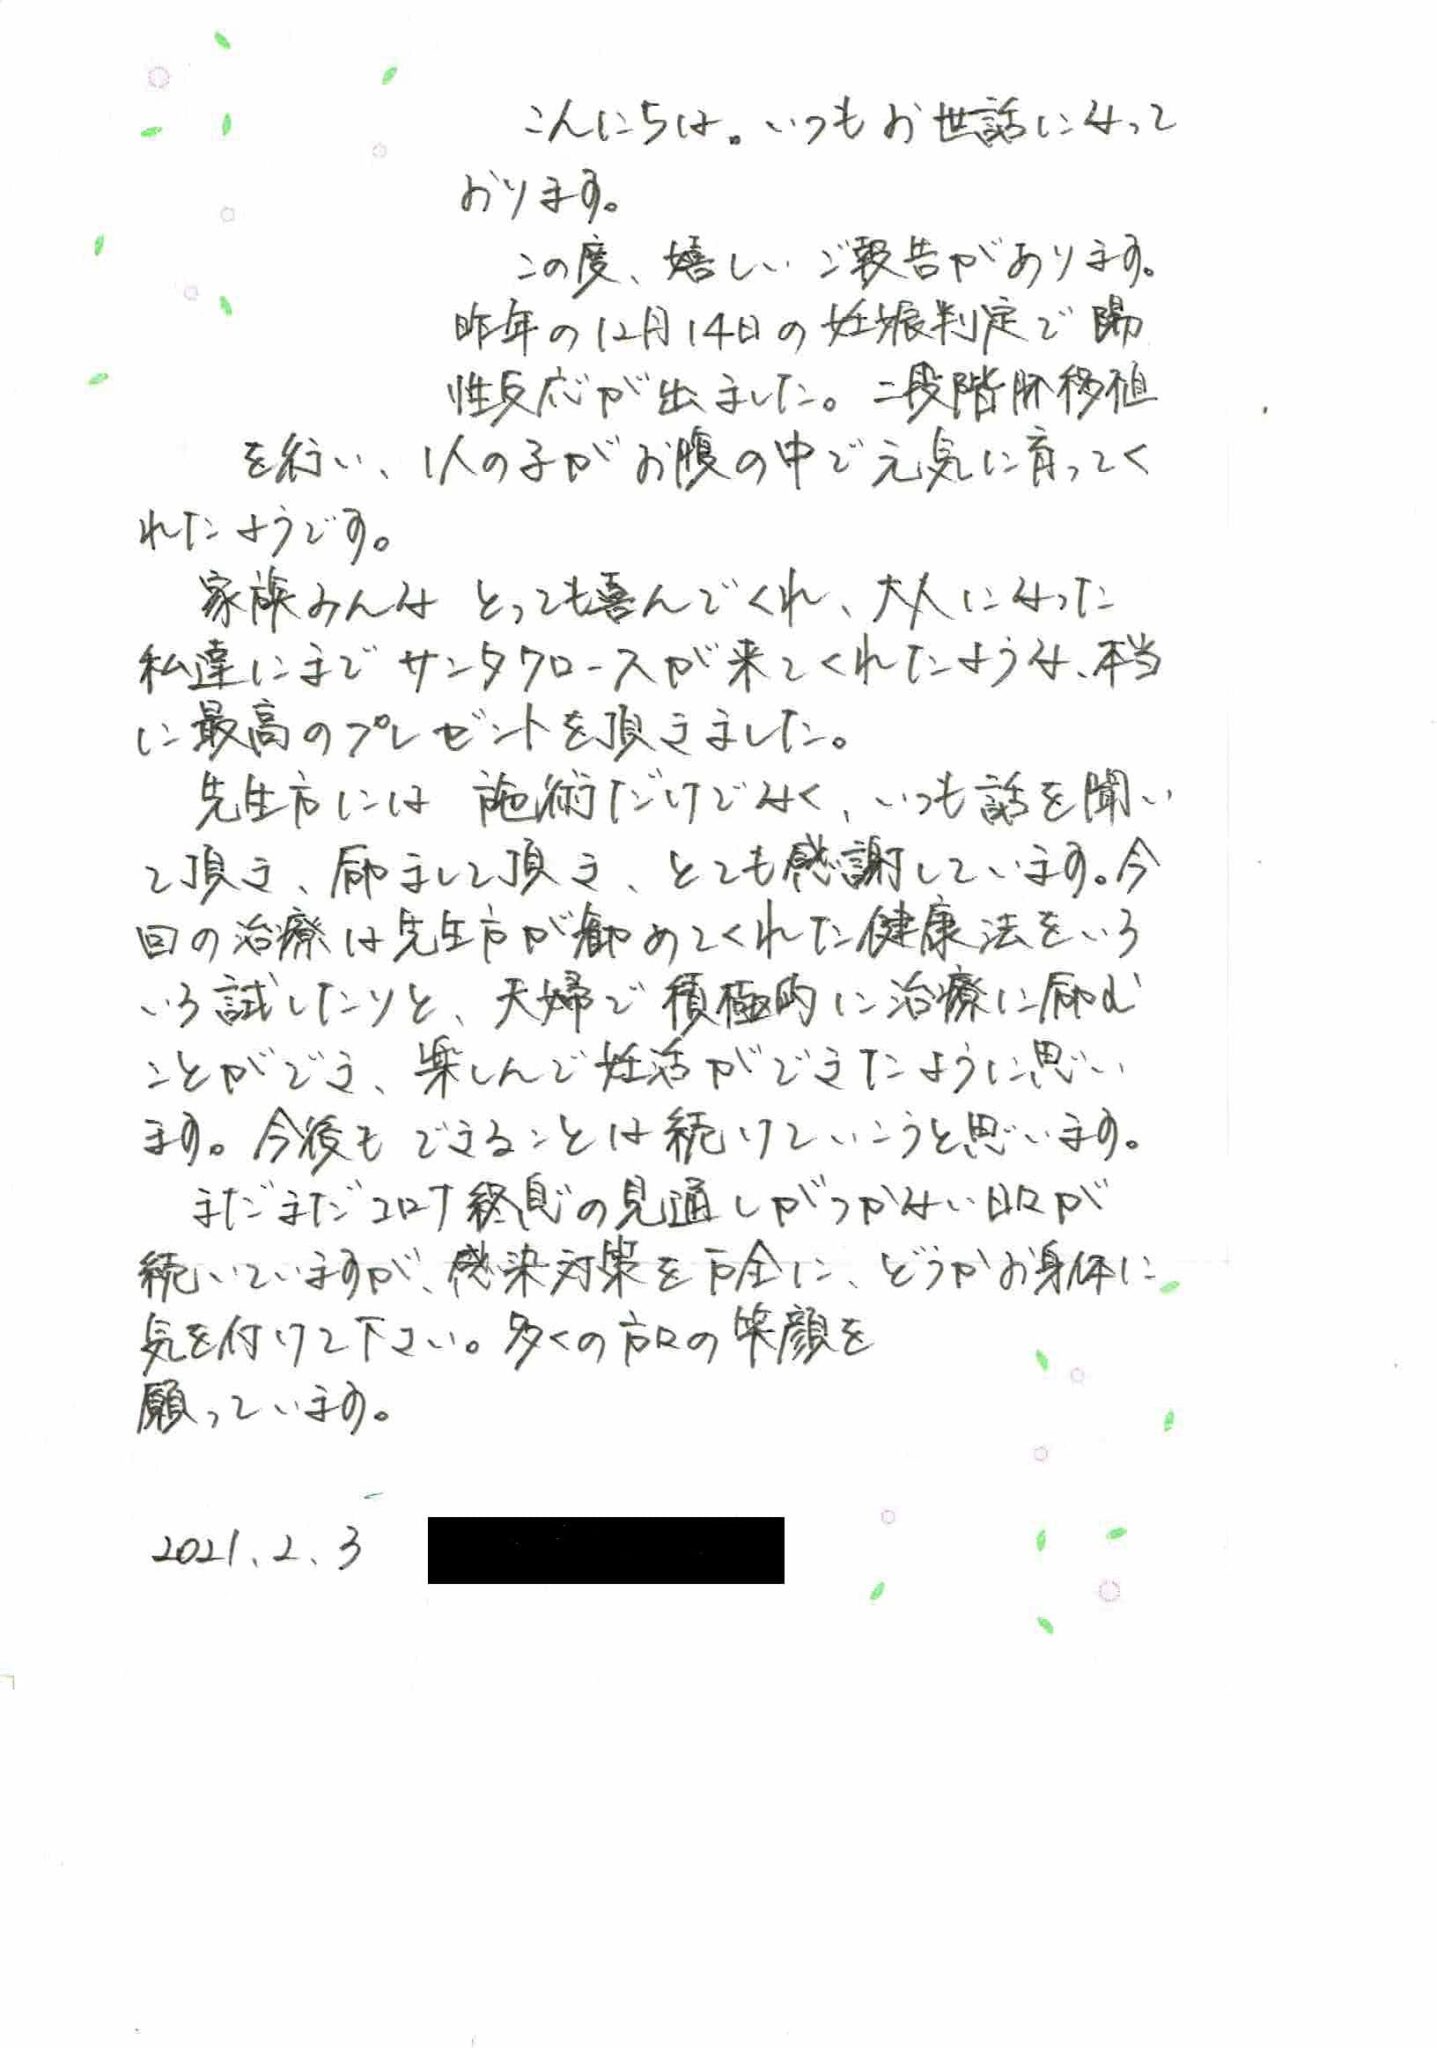 妊娠報告のお手紙をいただきました。 堺市で【不妊治療・不妊鍼灸】なら不妊鍼灸整体かすみ堂